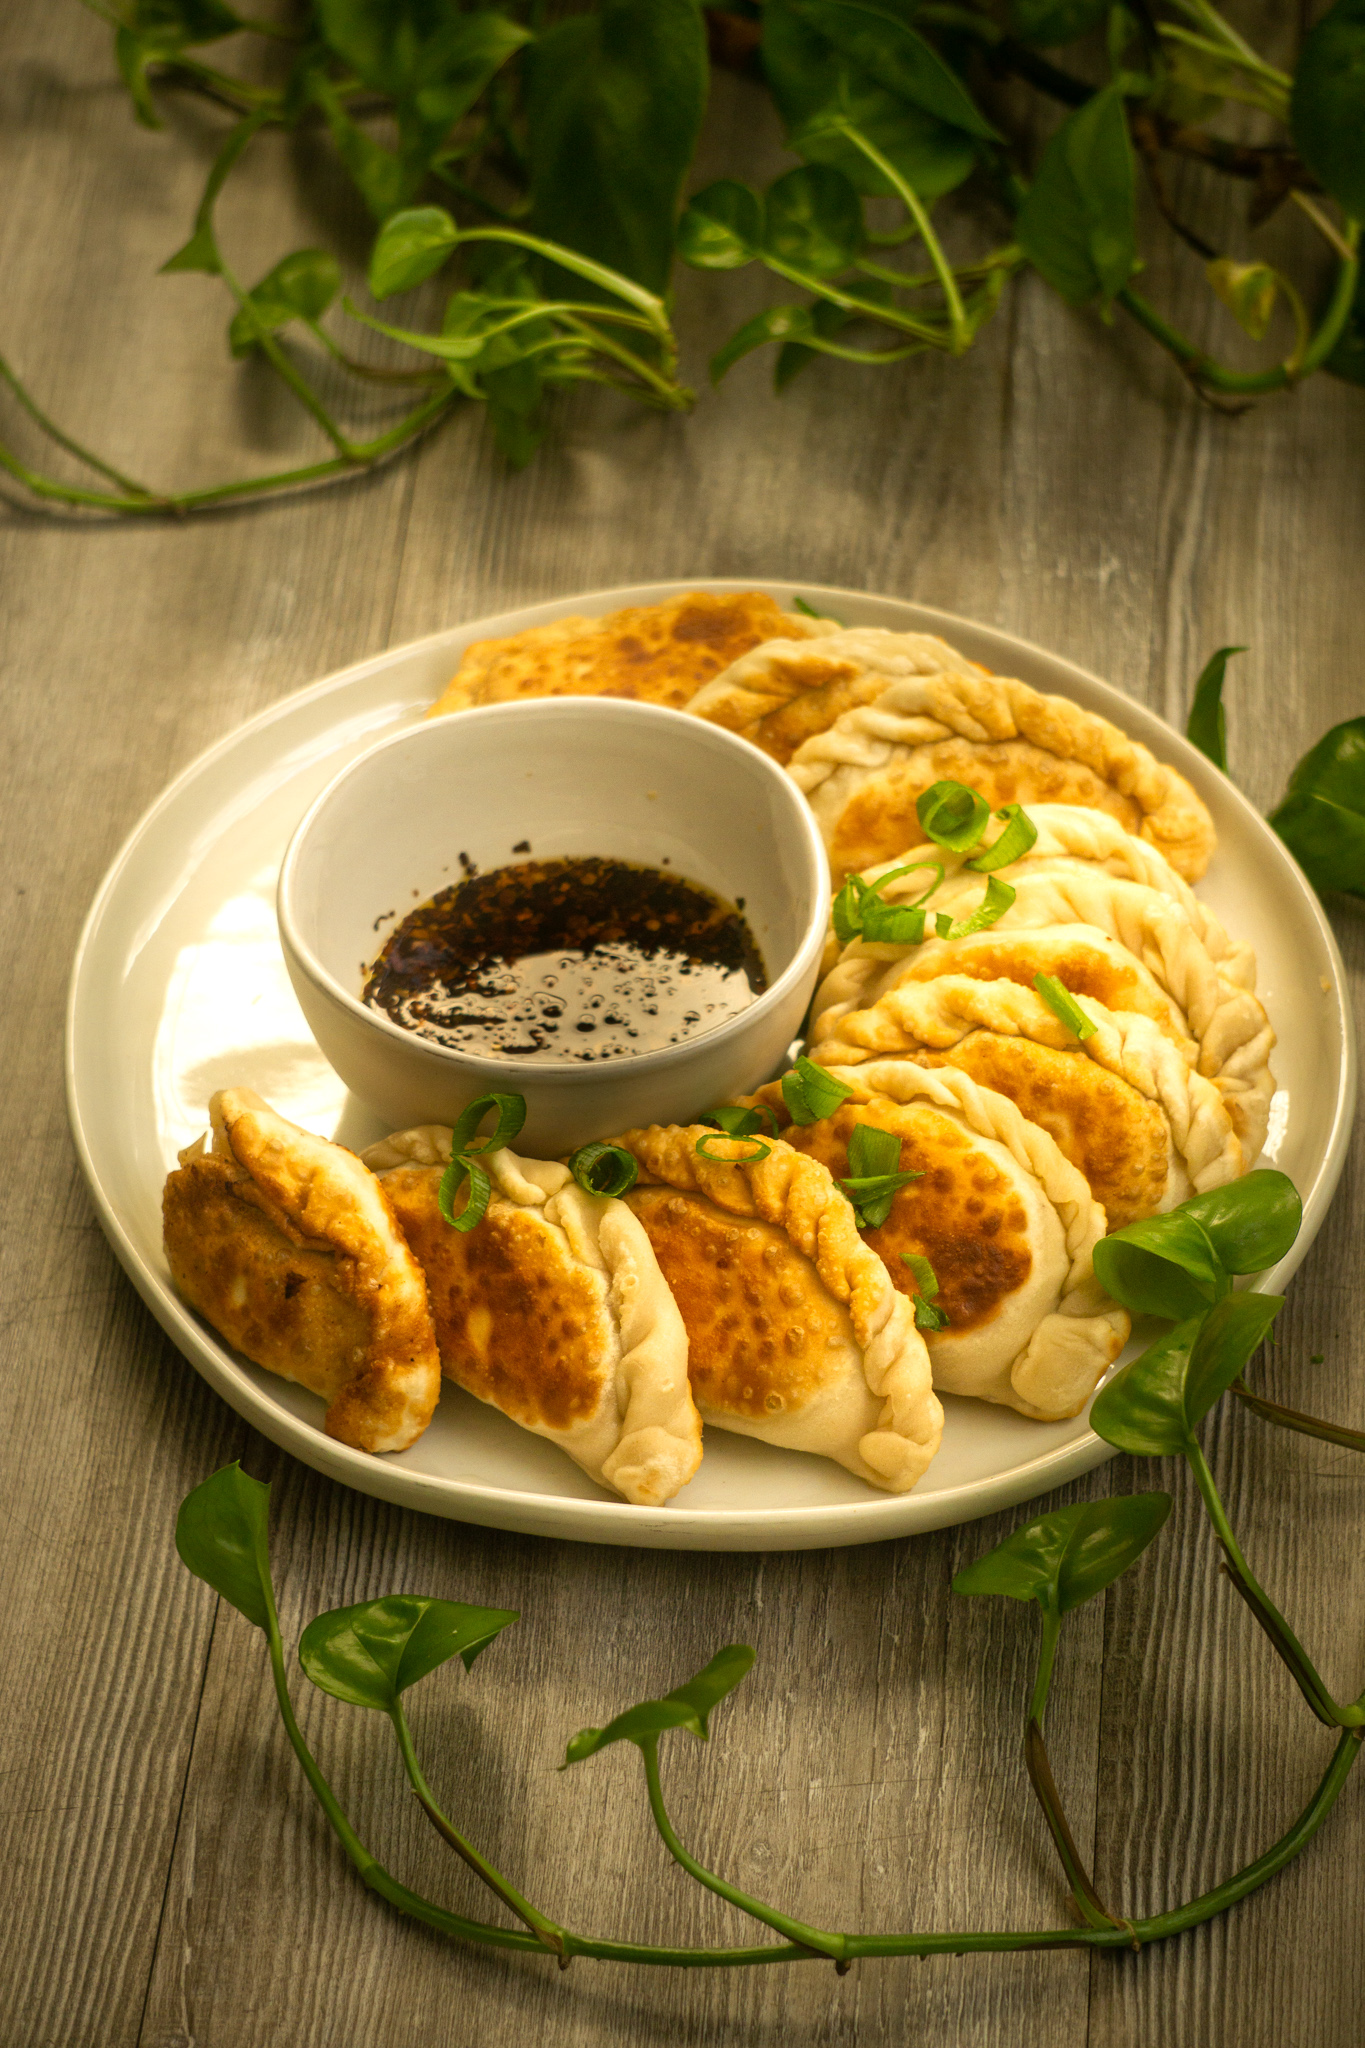 dumplings arranged on a plate